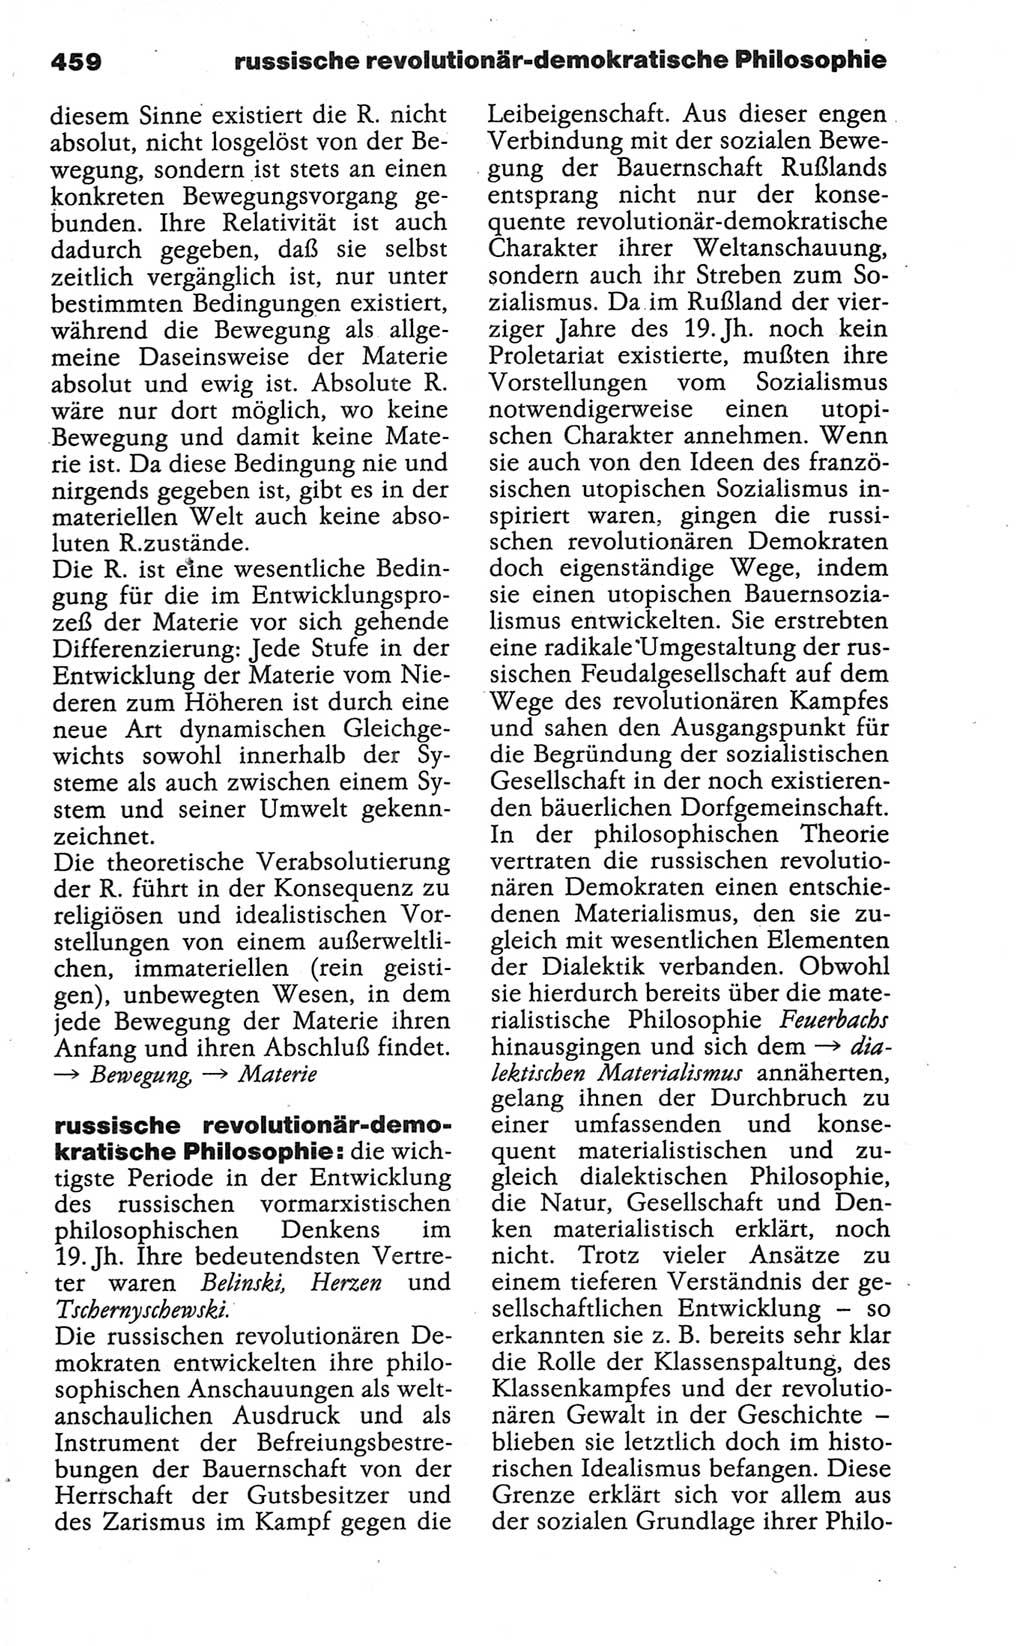 Wörterbuch der marxistisch-leninistischen Philosophie [Deutsche Demokratische Republik (DDR)] 1986, Seite 459 (Wb. ML Phil. DDR 1986, S. 459)